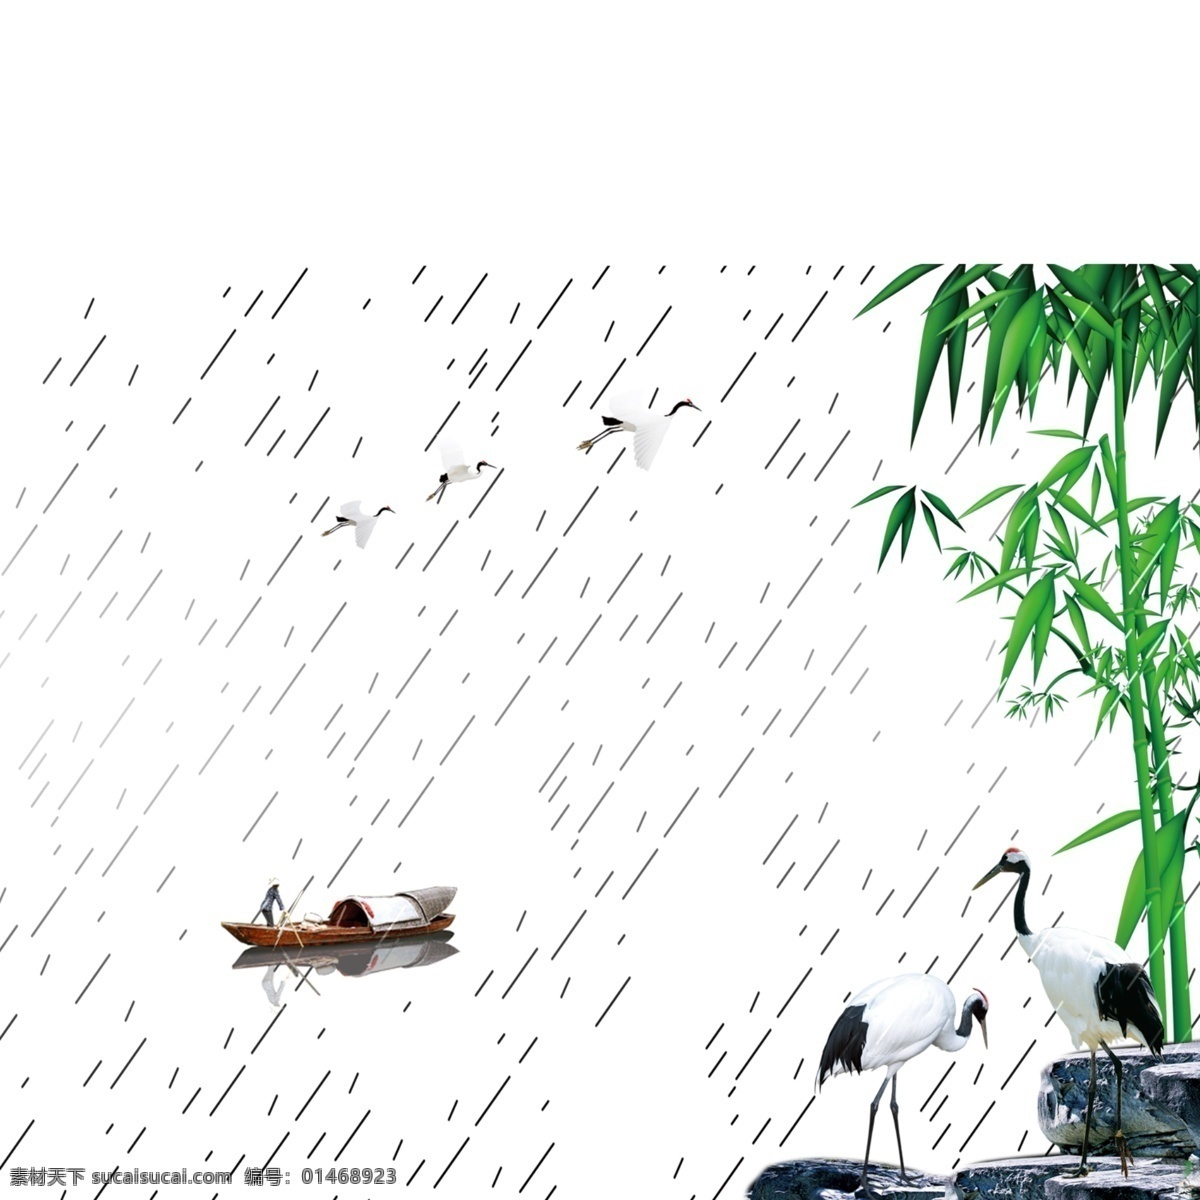 温婉 清新 雨季 湖面 装饰 元素 下雨 绿植 竹子 仙鹤 风景画 小舟 船夫 装饰元素